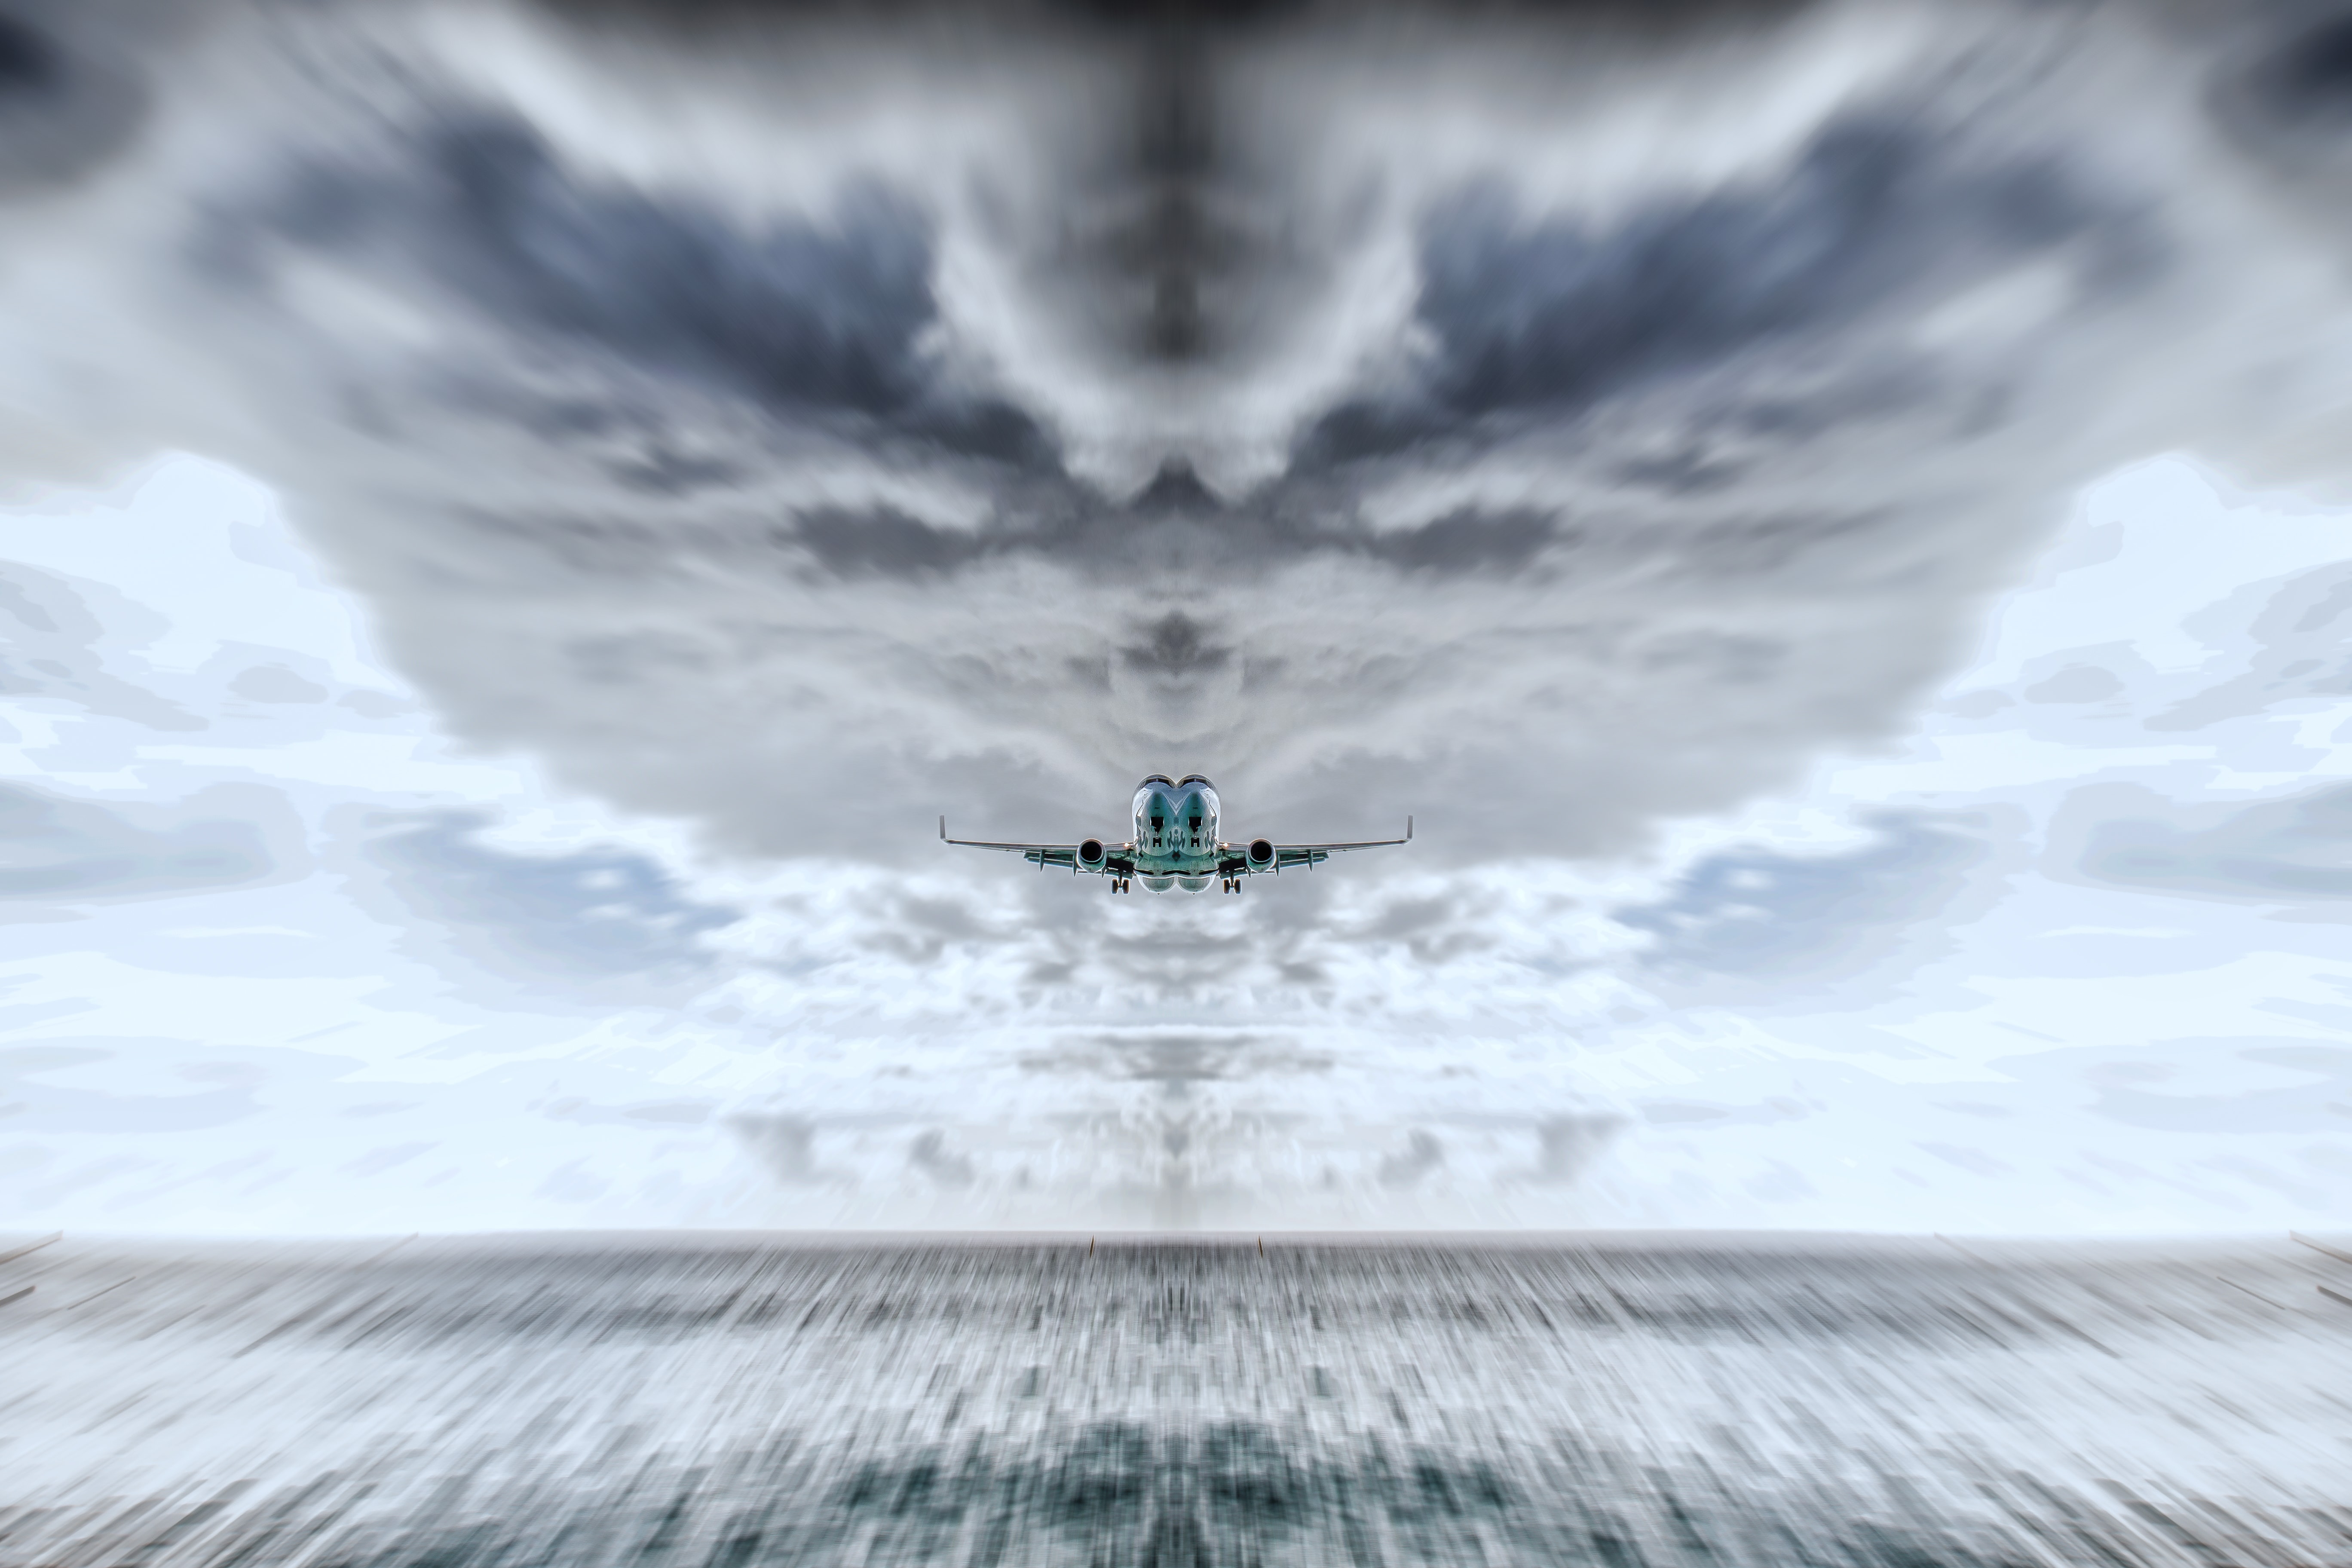 Plane landing against stormy skies